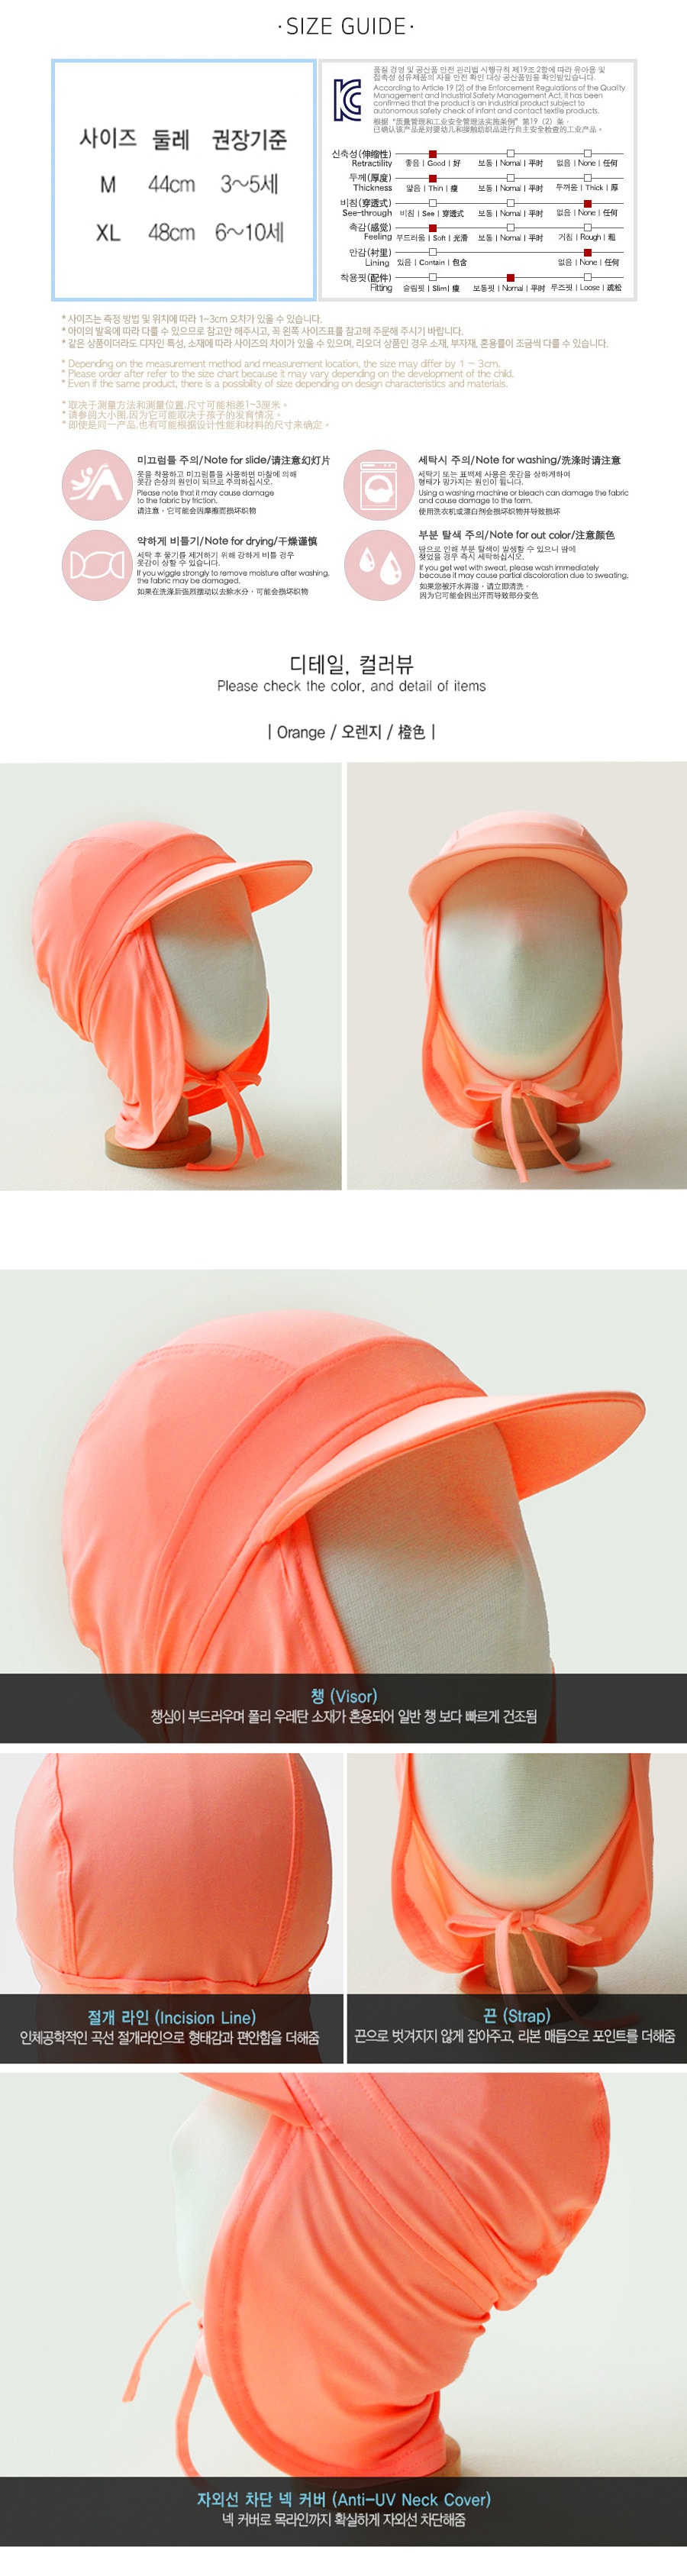 Toddler Kid Girl Flap Sun Protection Hat #Orange XL(6-10years)